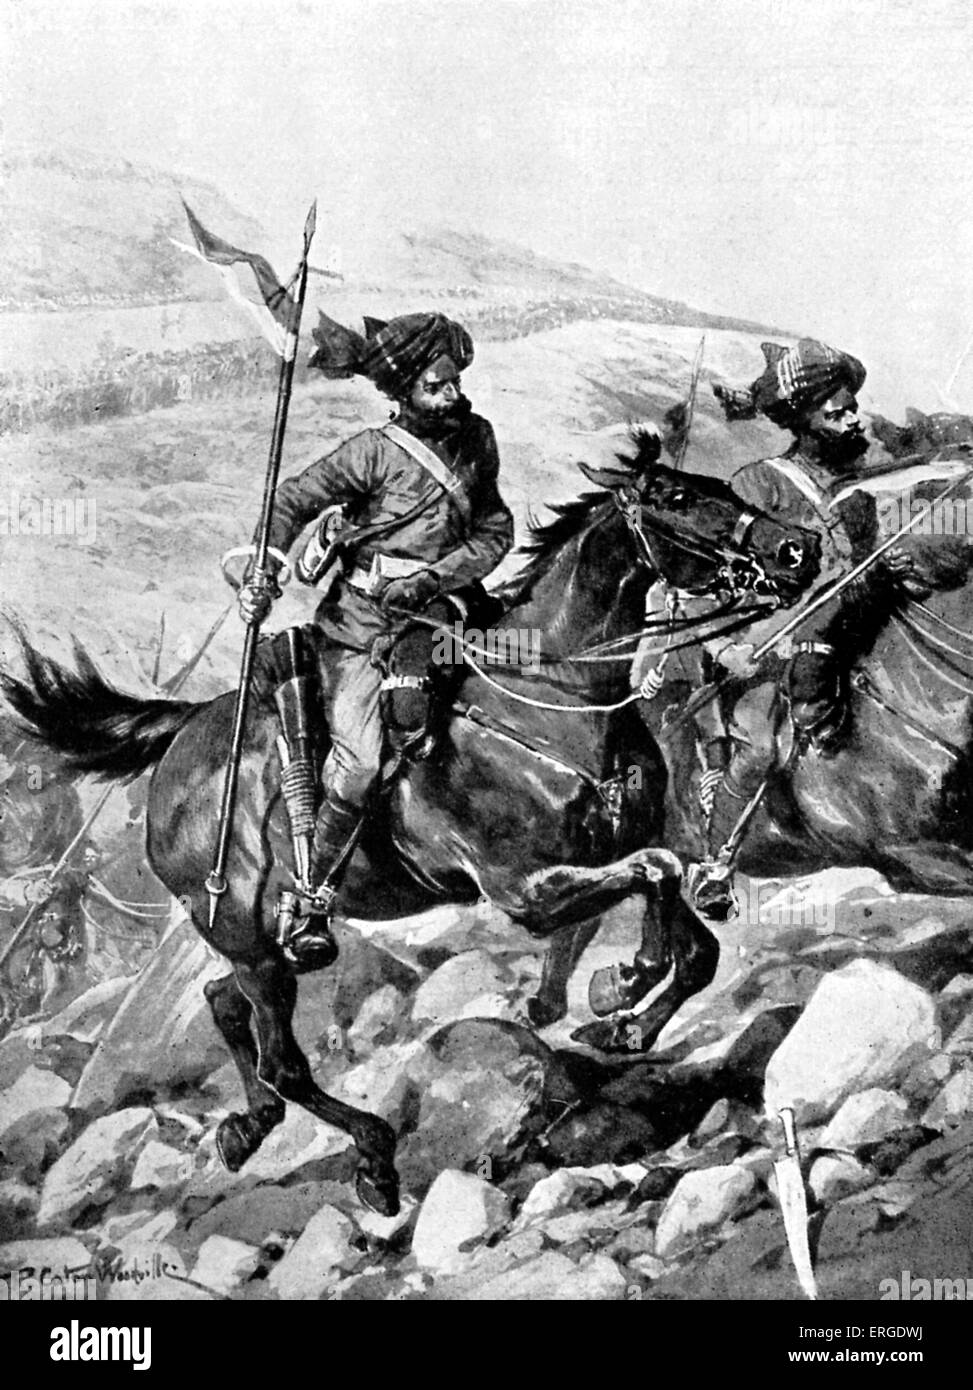 Bengal Lancers der Britisch-Indien Armee - während es 1897 war eine Serie von Angriffen auf britische Truppen entlang der afghanischen Grenze. Stockfoto